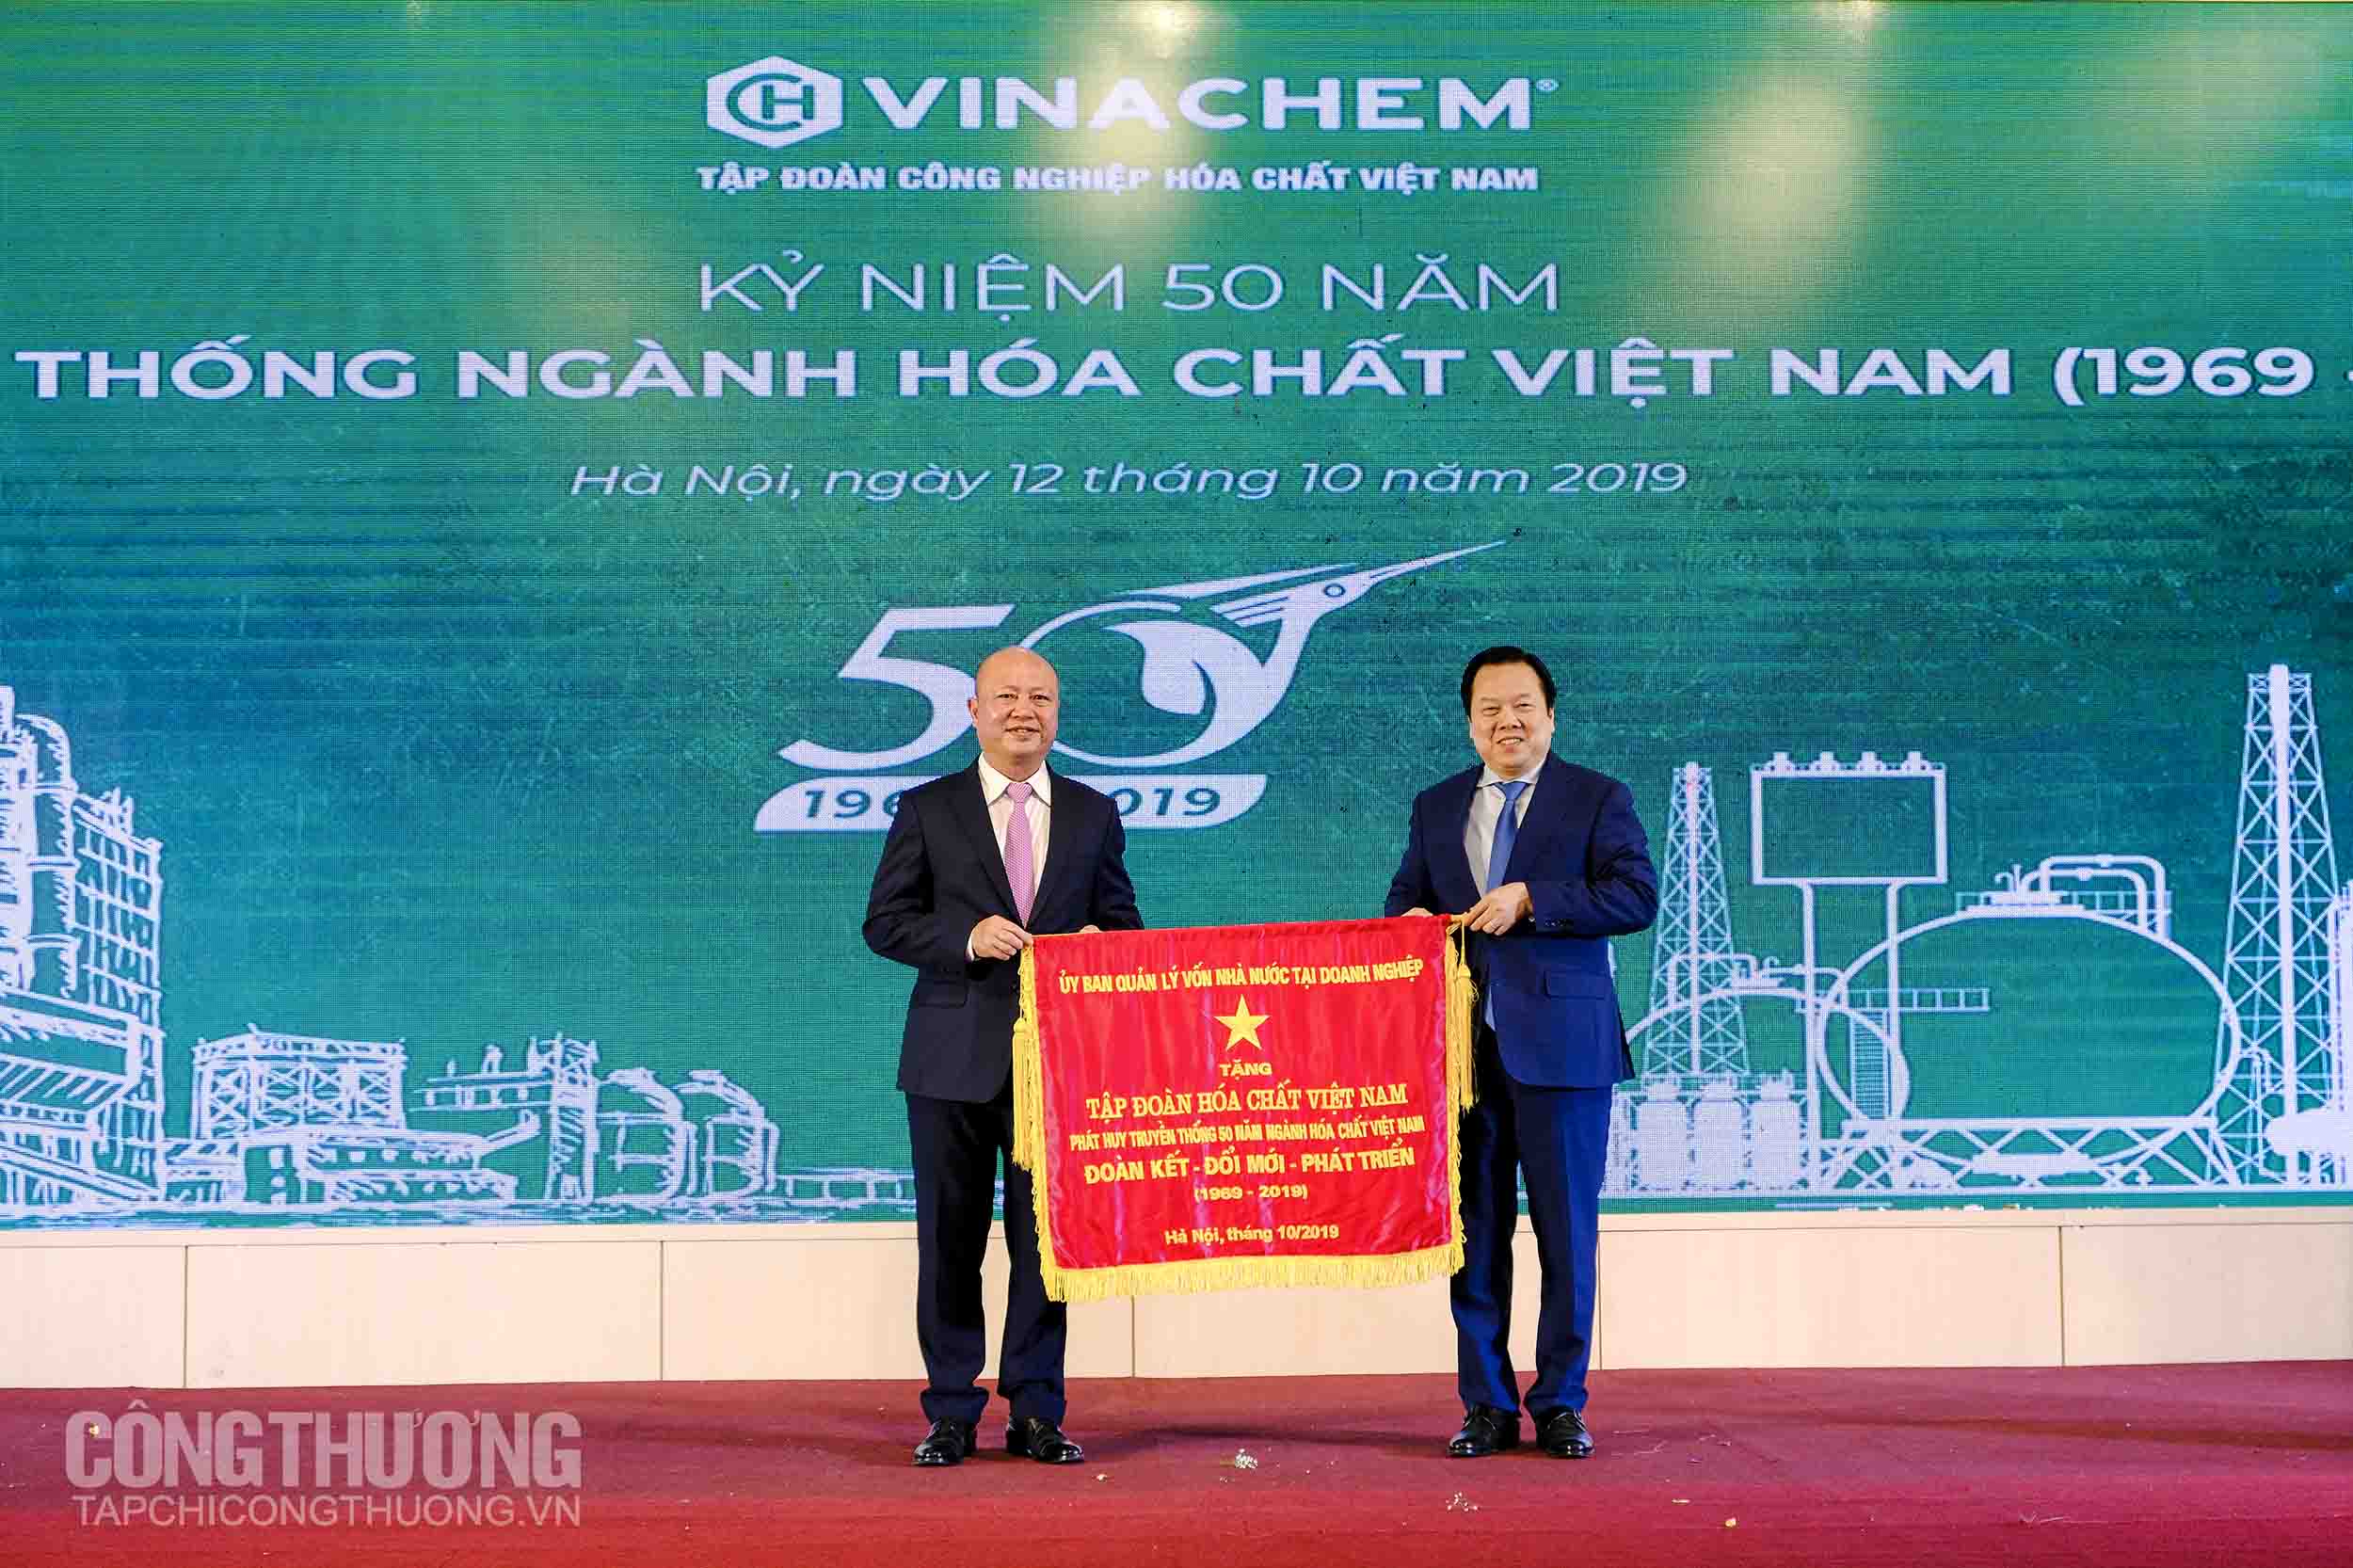 Chủ tịch Ủy ban Quản lý vốn nhà nước tại doanh nghiệp Nguyễn Hoàng Anh trao trướng lưu niệm cho Tập đoàn Công nghiệp Hóa chất Việt Nam